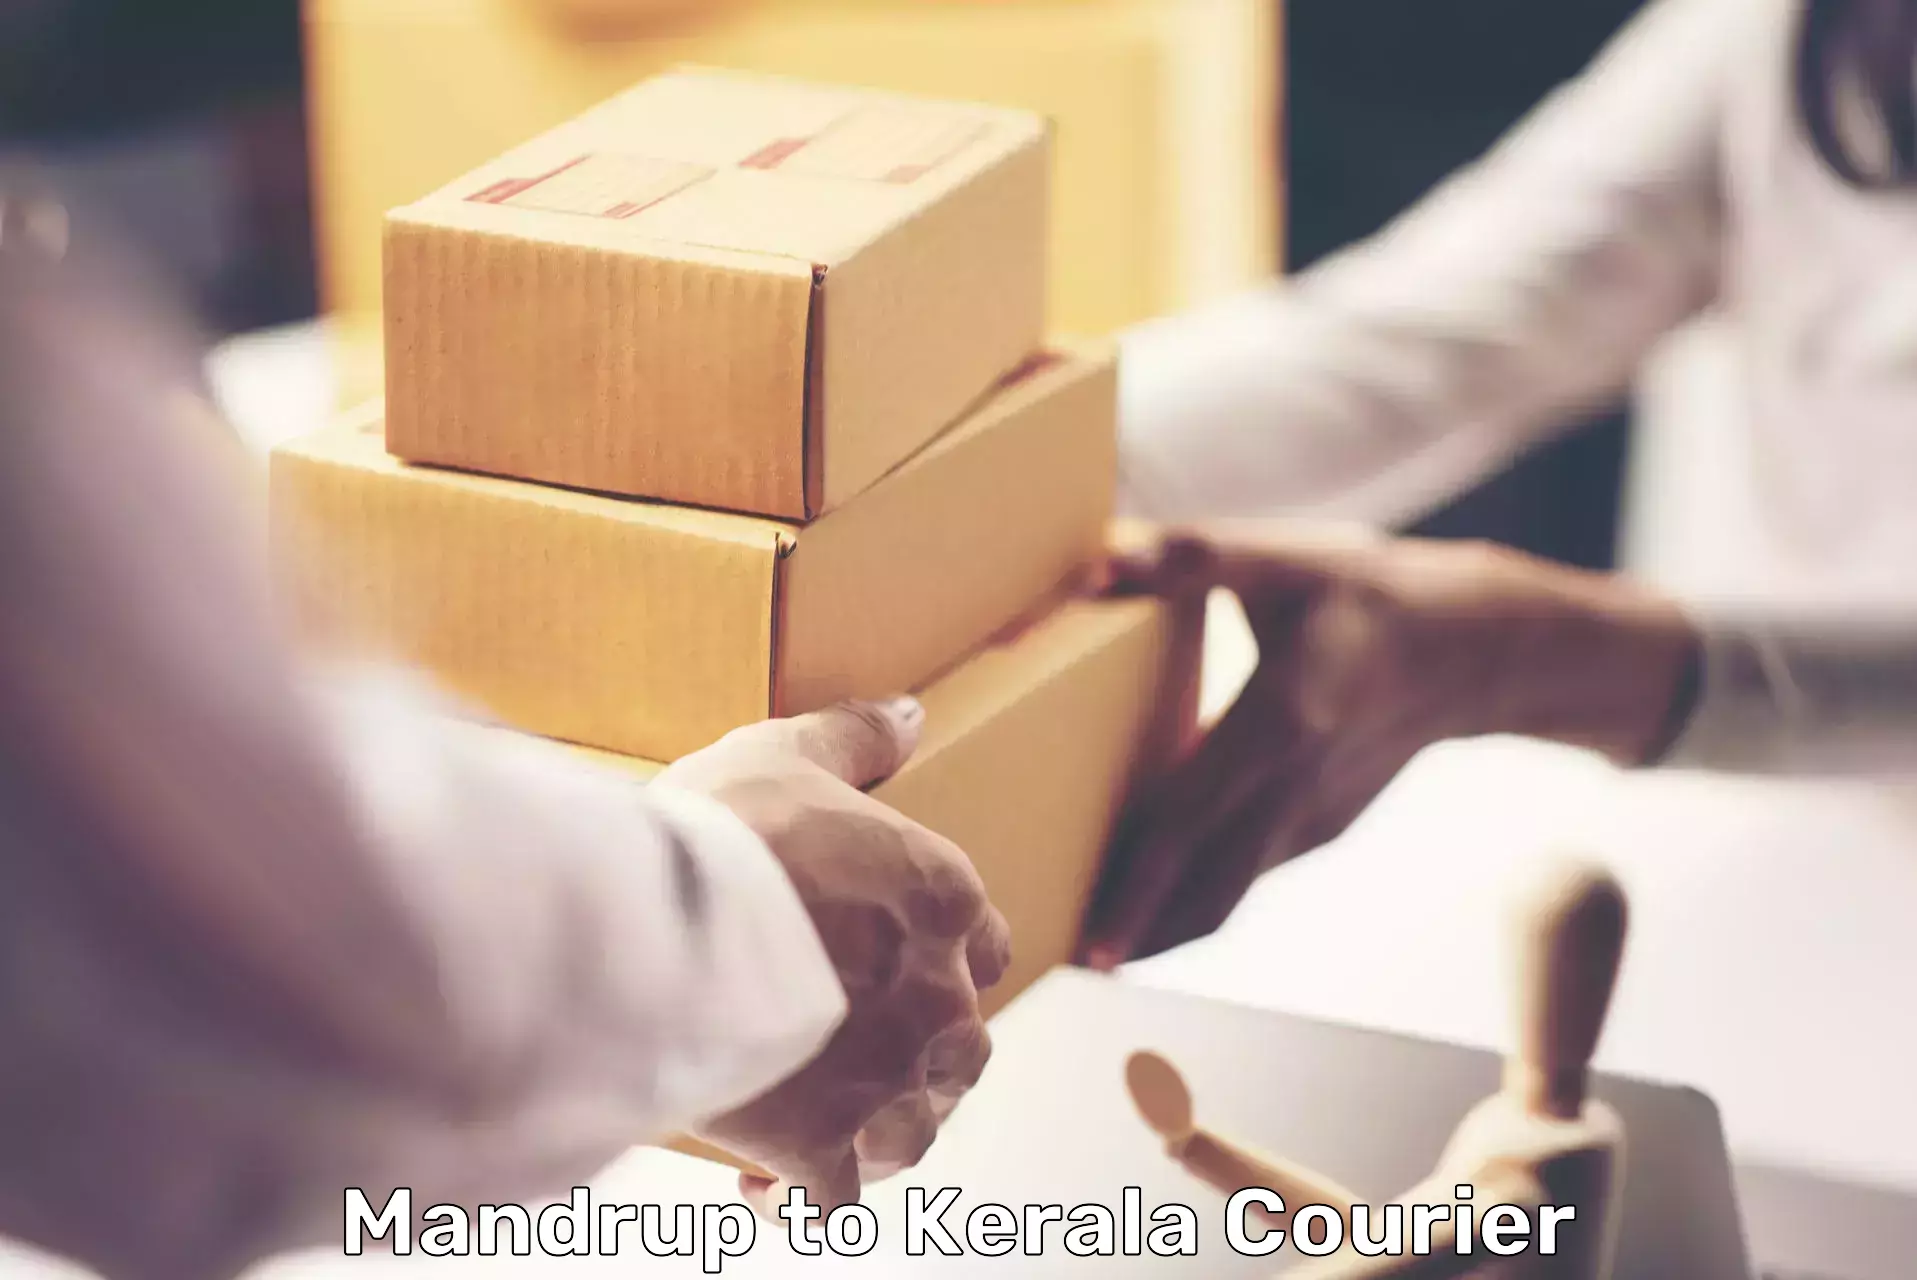 E-commerce fulfillment Mandrup to Kochi